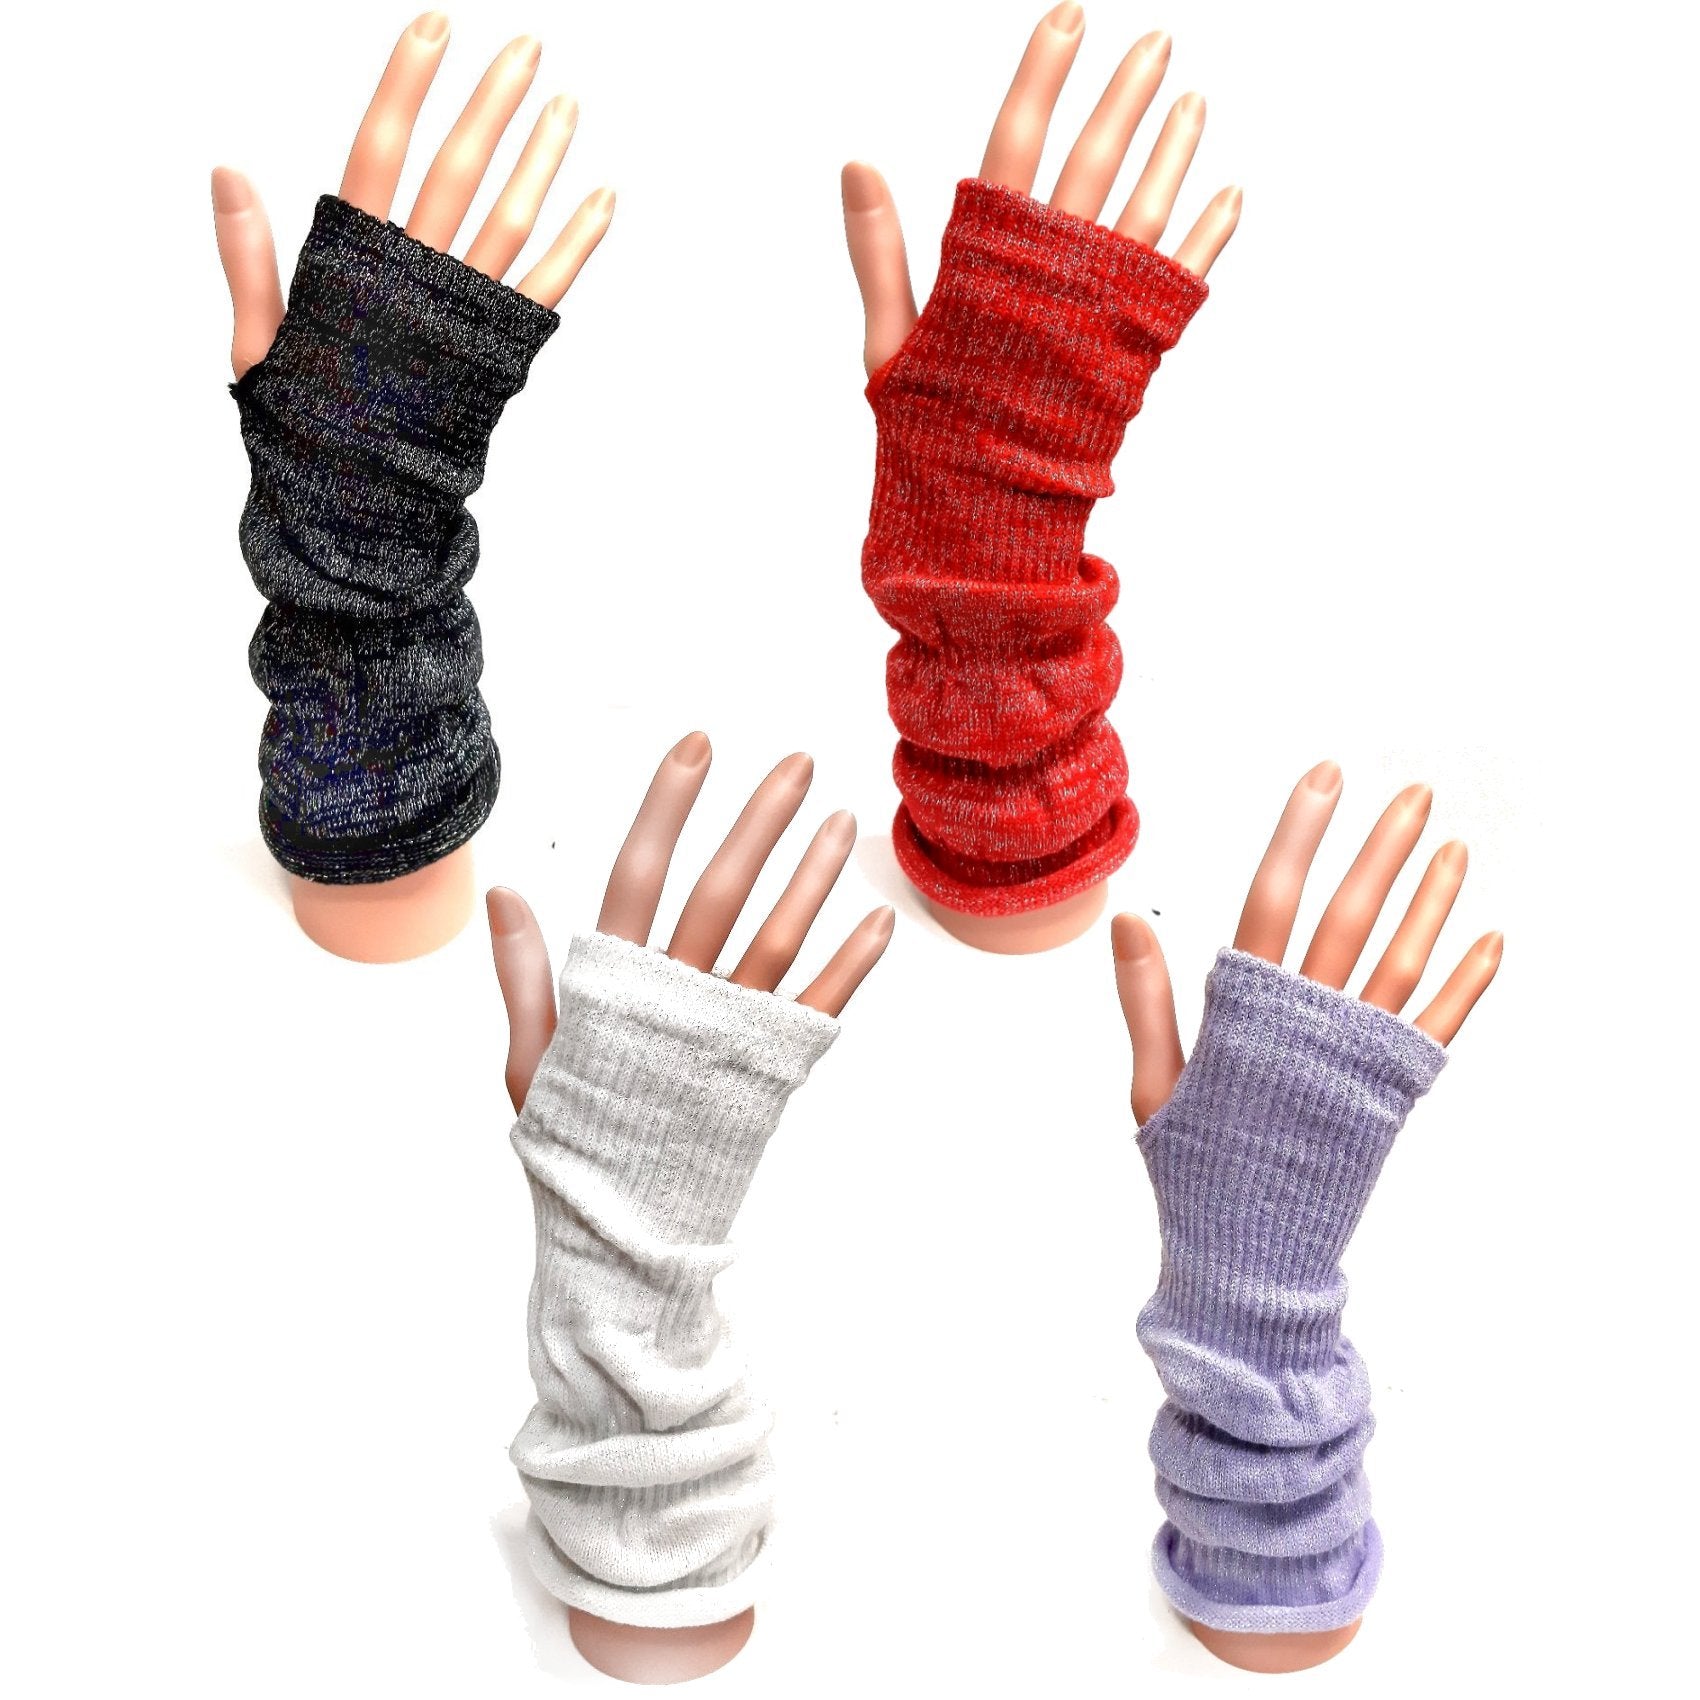 Knitted Long Fingerless Gloves - Black Silver Sparkle - Winter Christmas Gift